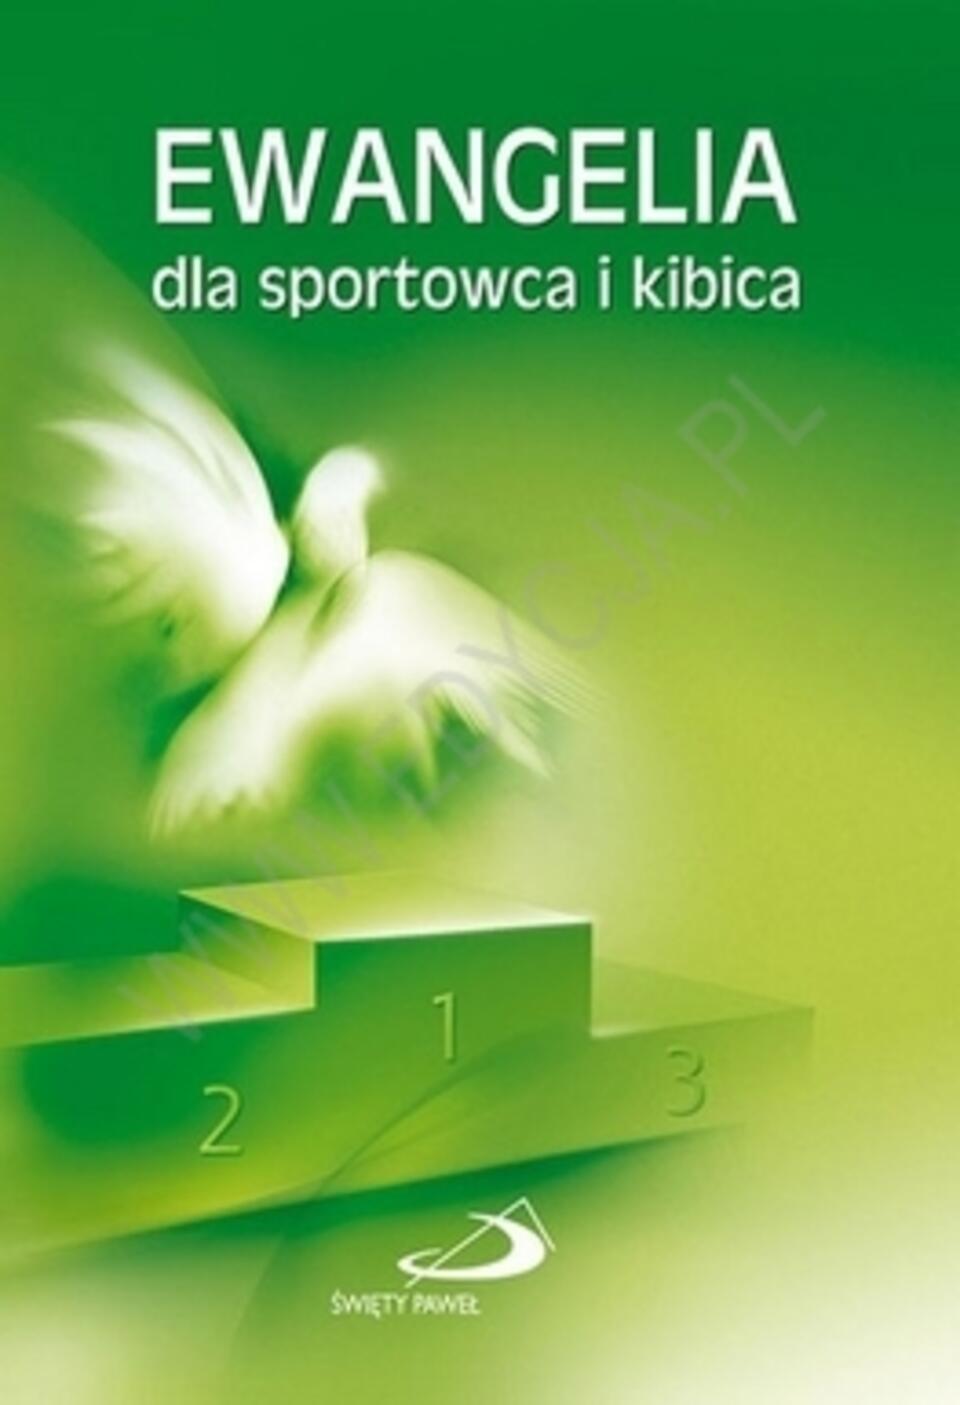 fot. www.edycja.pl